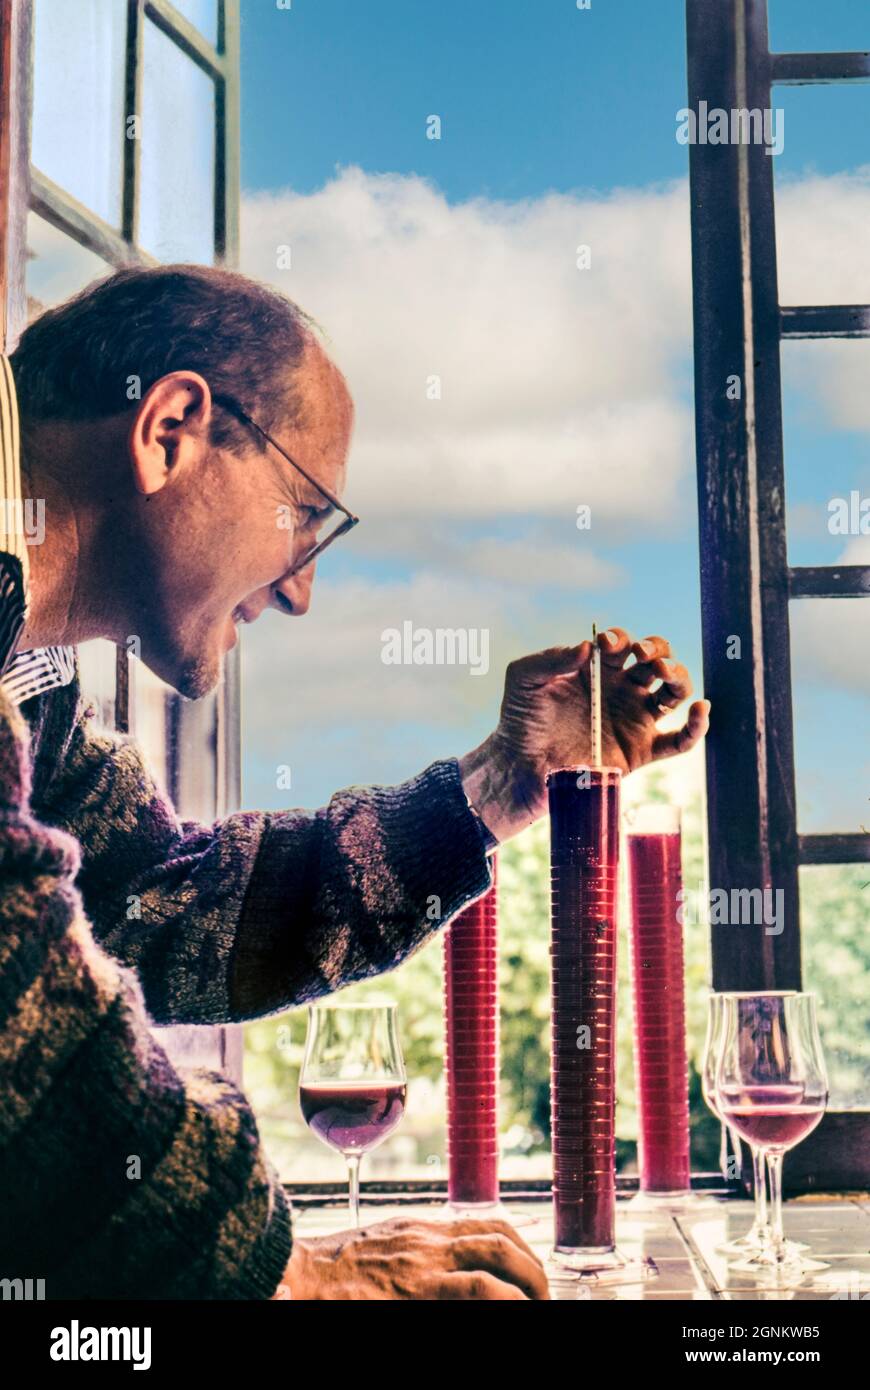 PINOT NOIR ÉVALUATION DE LA RÉCOLTE viticulteur mesurant la gravité spécifique du jus de raisin du Pinot Noir récemment récolté au domaine viticole du Château de Corton Grancey de Louis Latour Bourgogne France Banque D'Images